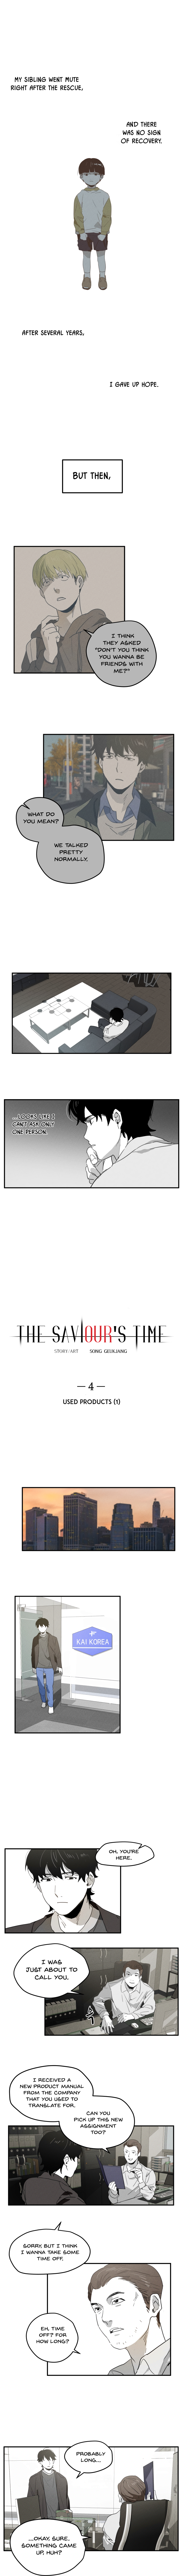 The Saviour’S Time - Page 1